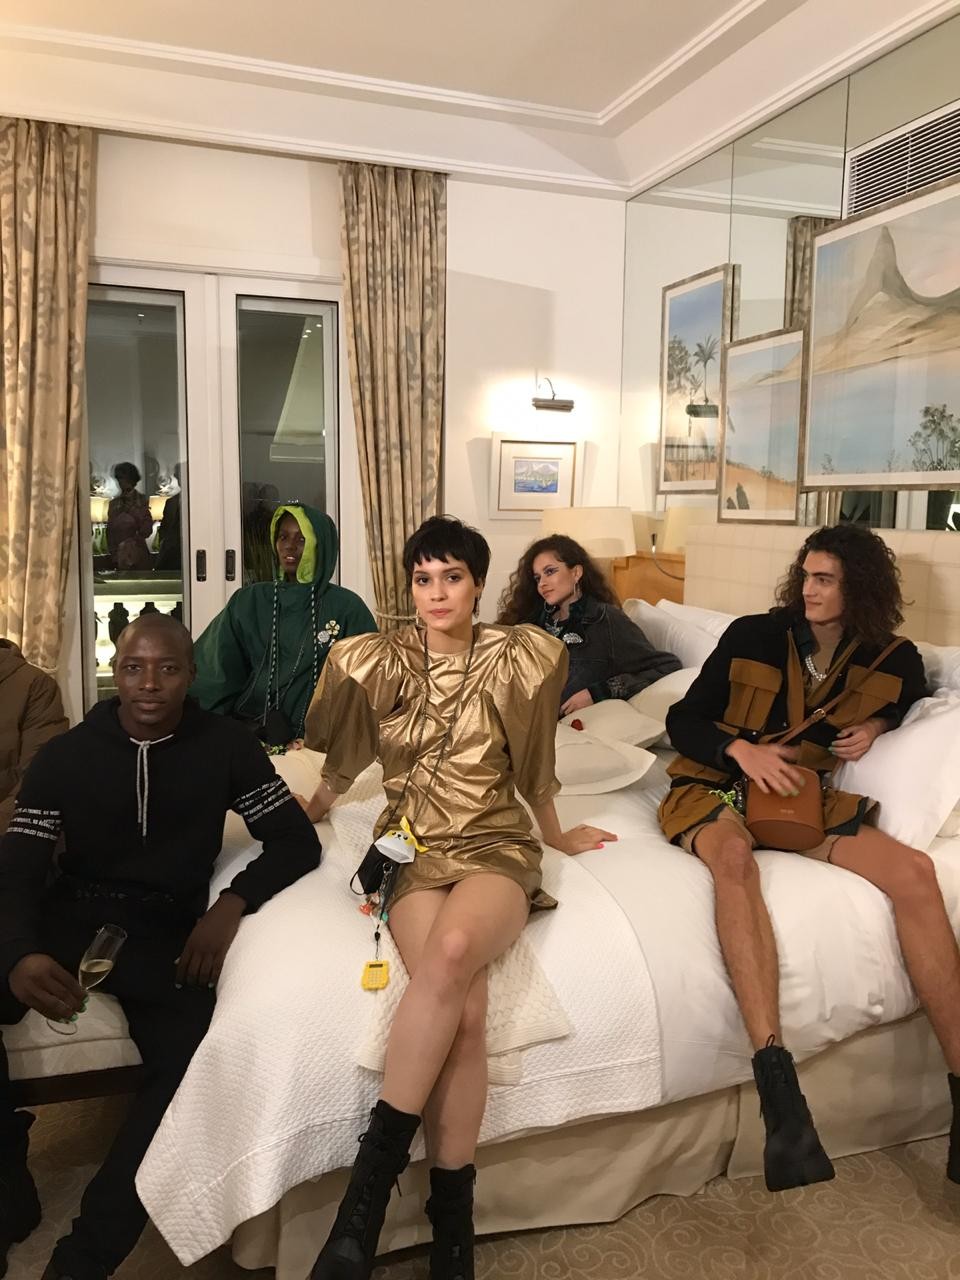 Convidados posam na suíte do hotel Copacabana Palace (Foto: Vogue)